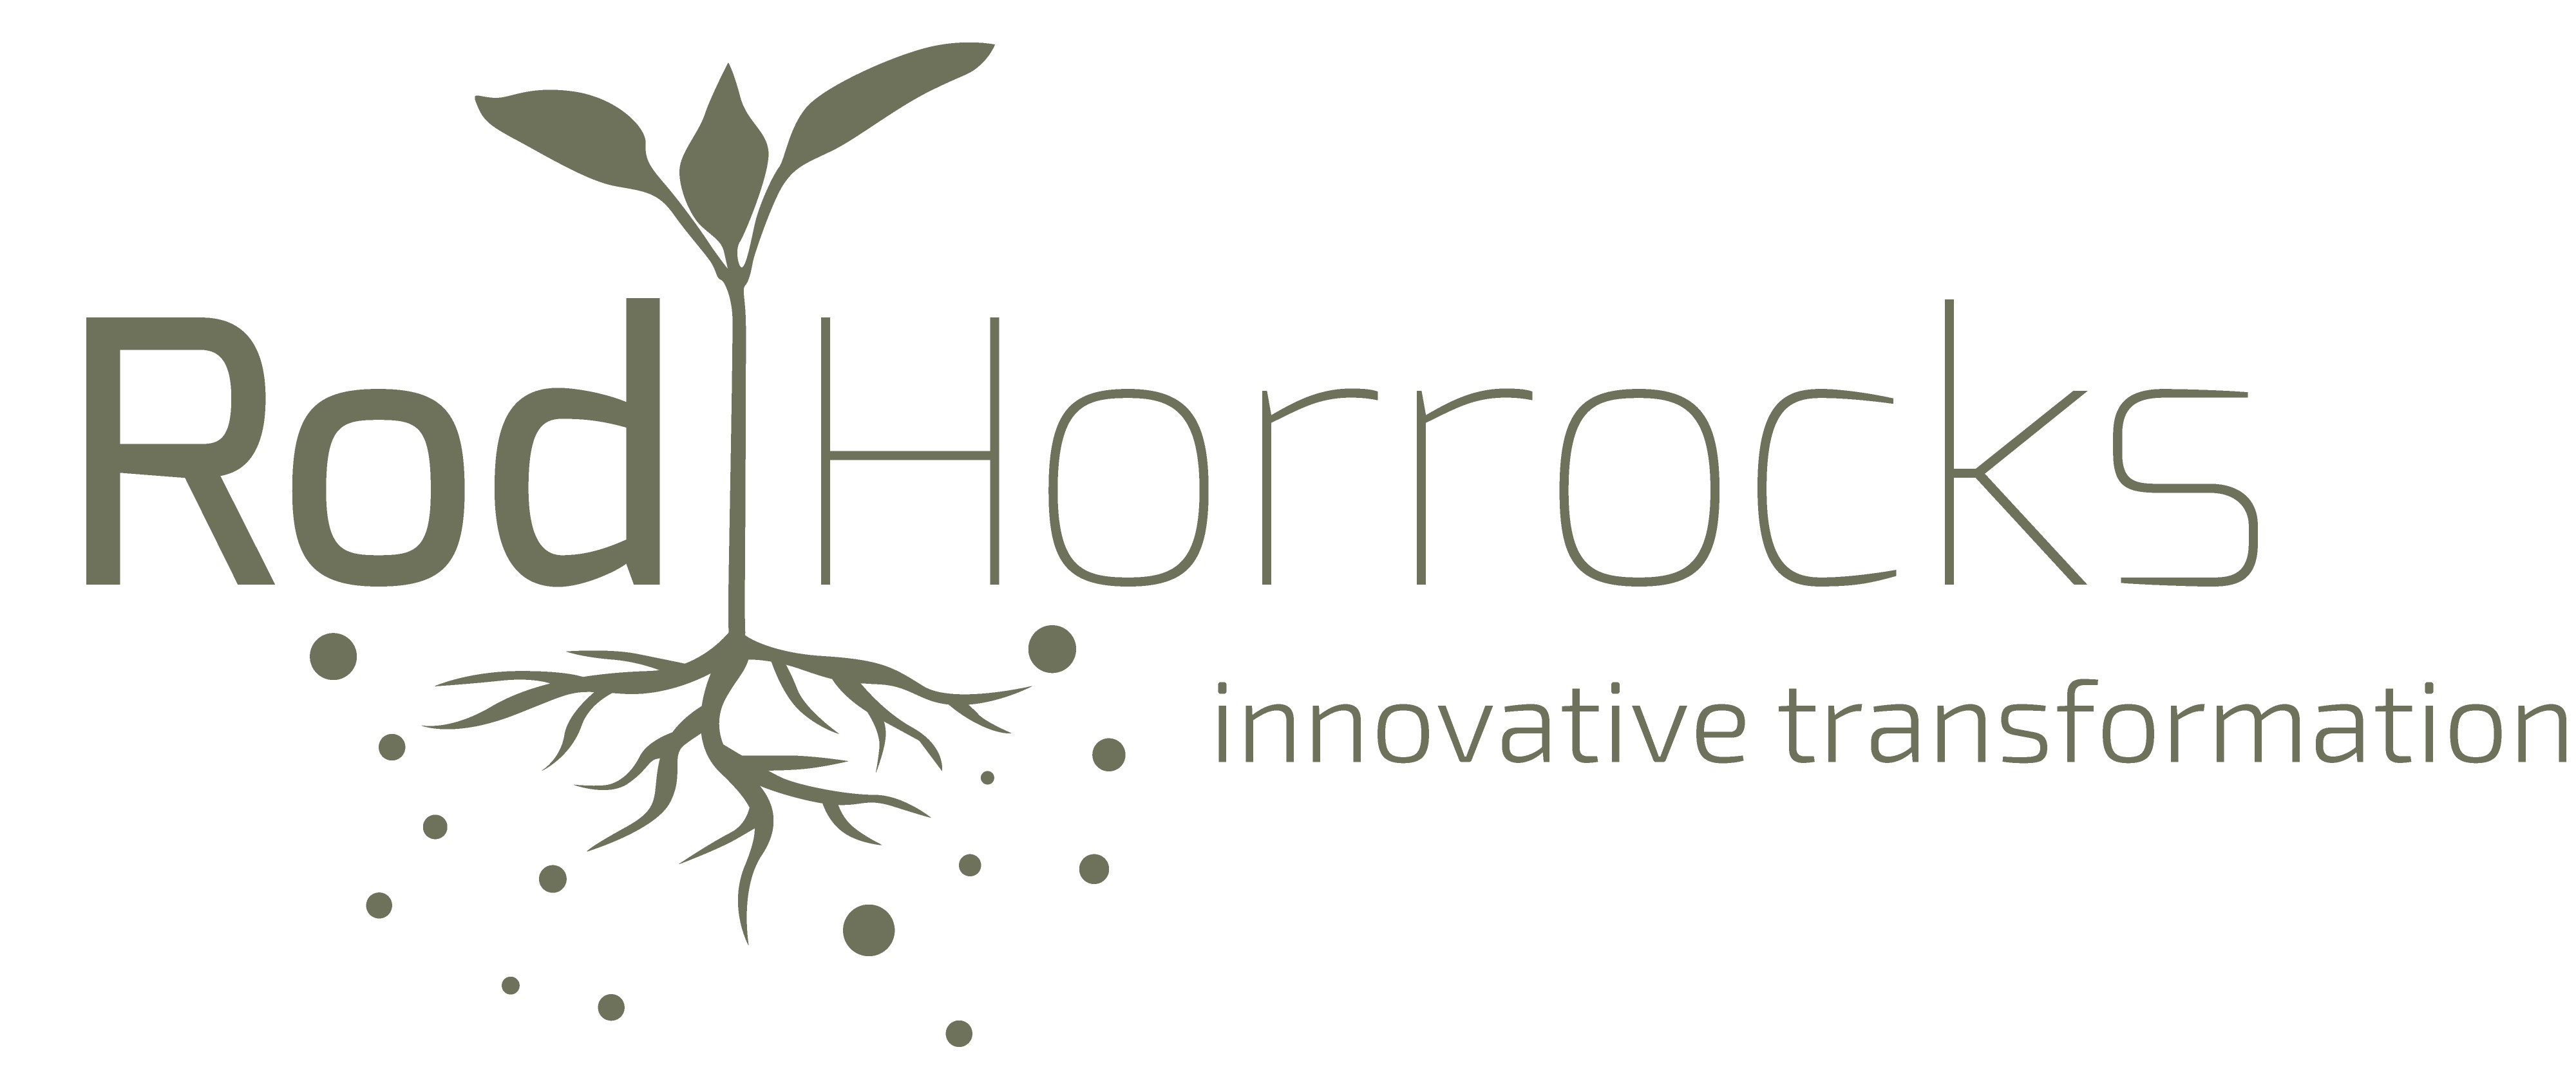 Rod Horrocks logo